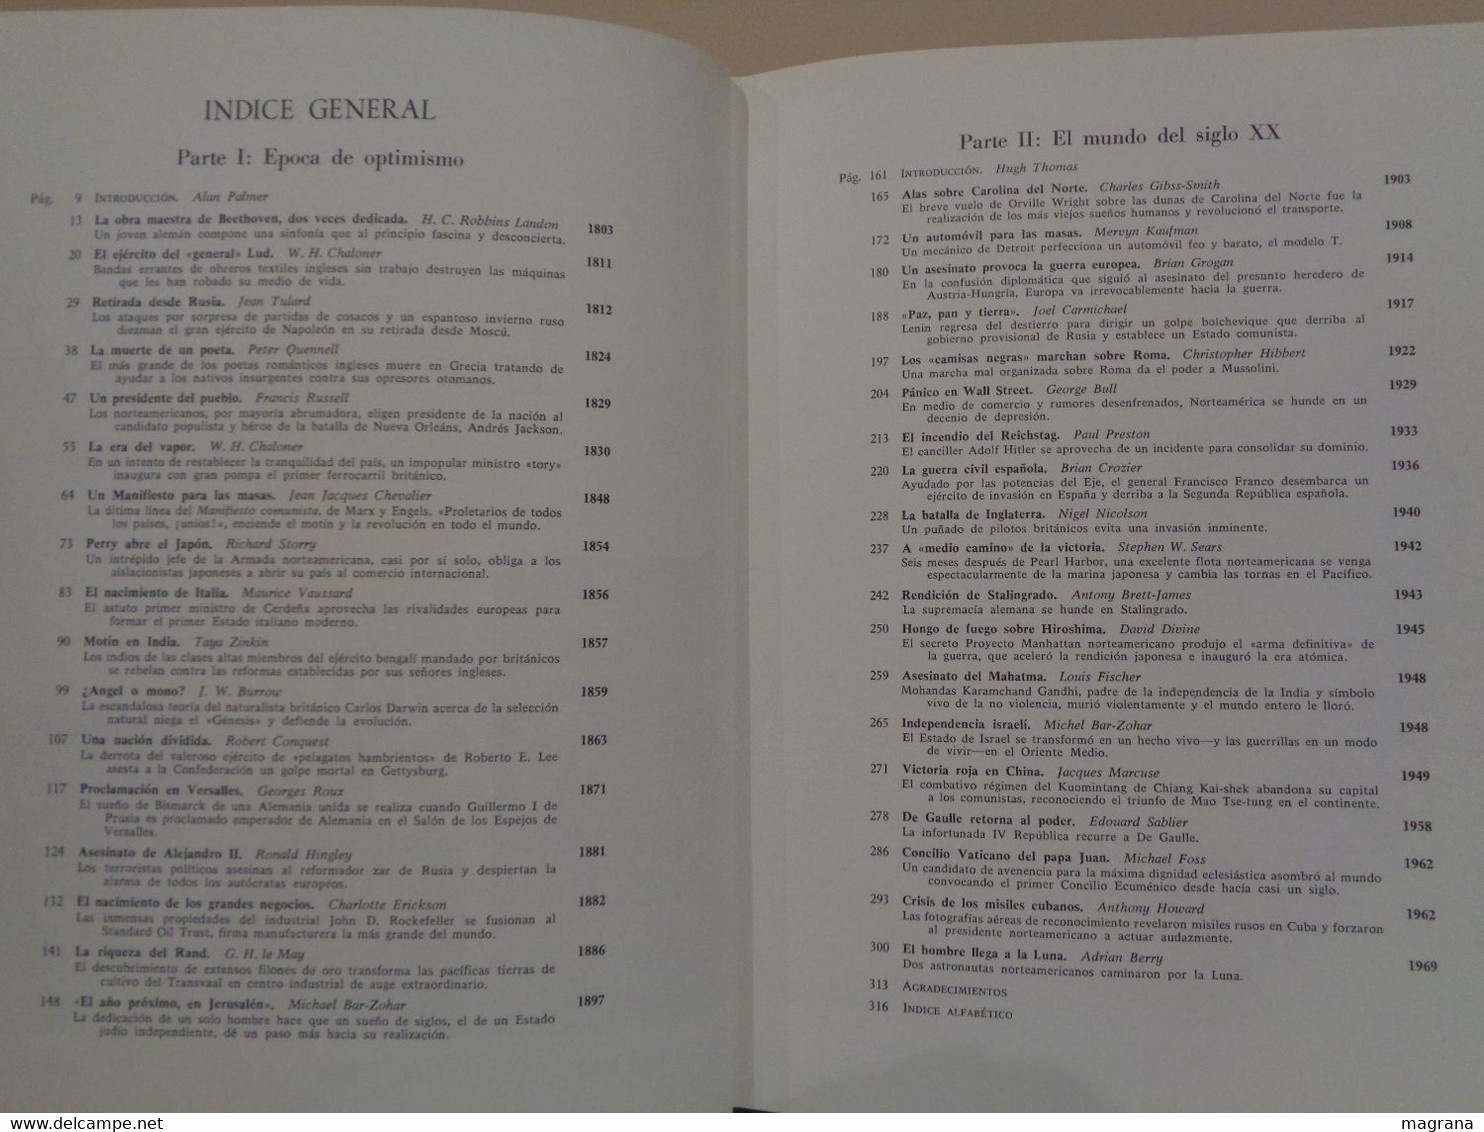 Historia Universal en sus momentos cruciales. Ed. Aguilar. 3 volúmenes. 1970.